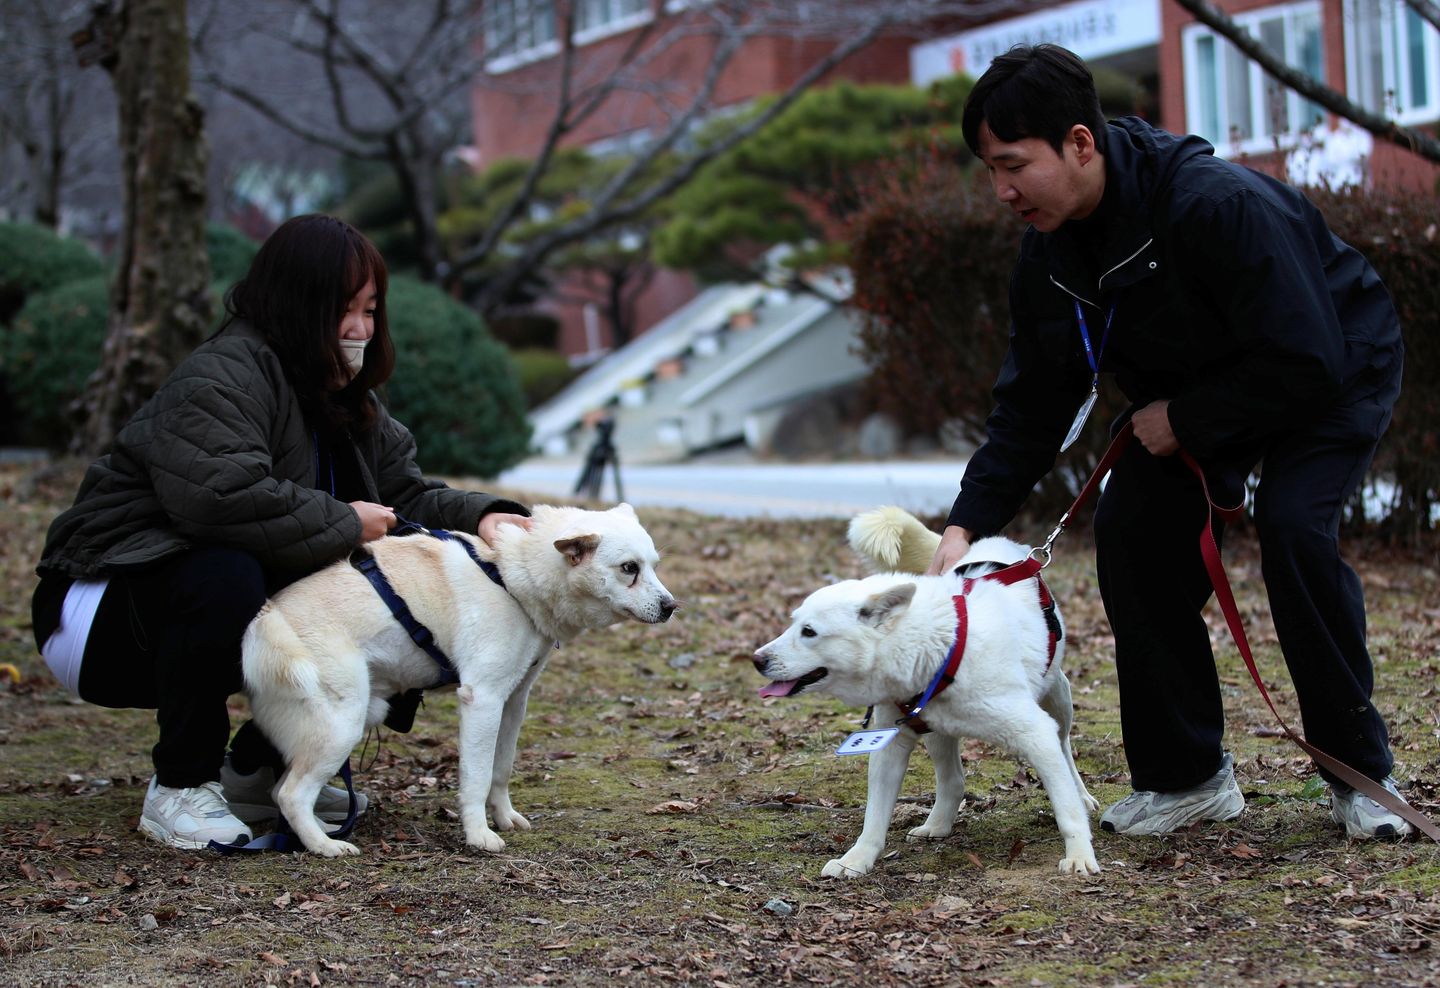 North'un Kim tarafından hediye edilen köpekler Güney Kore hayvanat bahçesine yerleştirildi